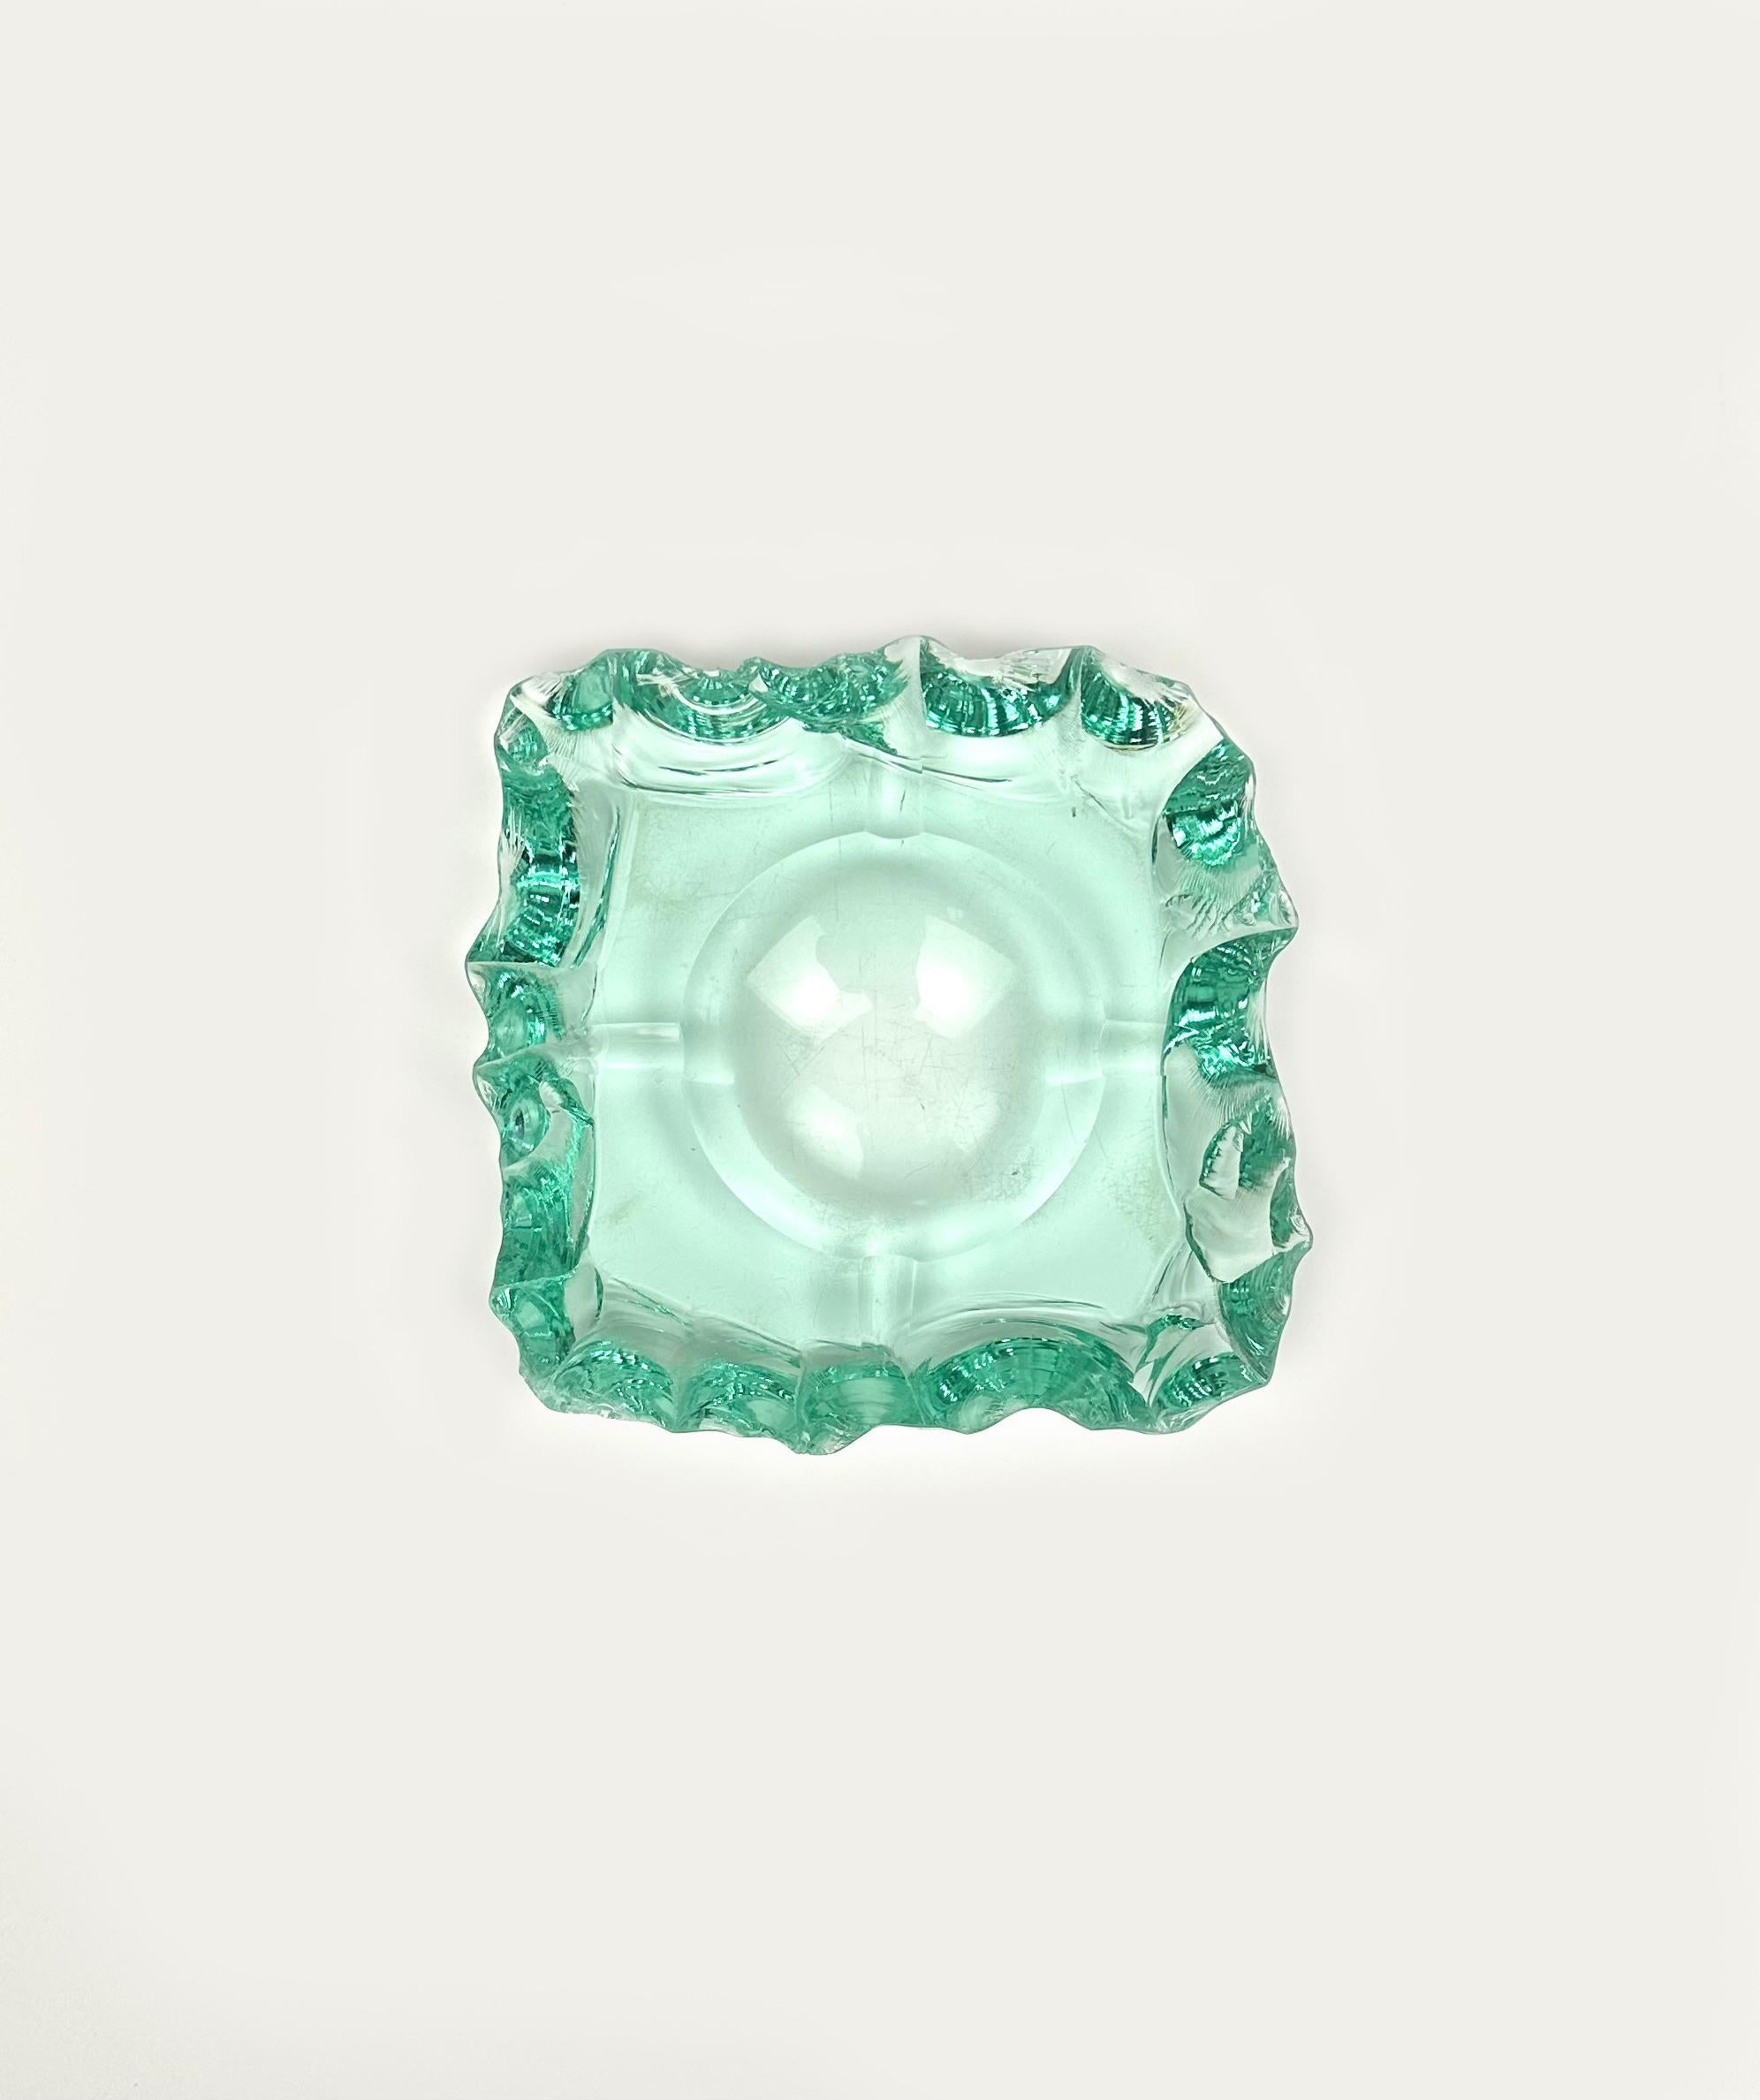 green depression glass ashtray